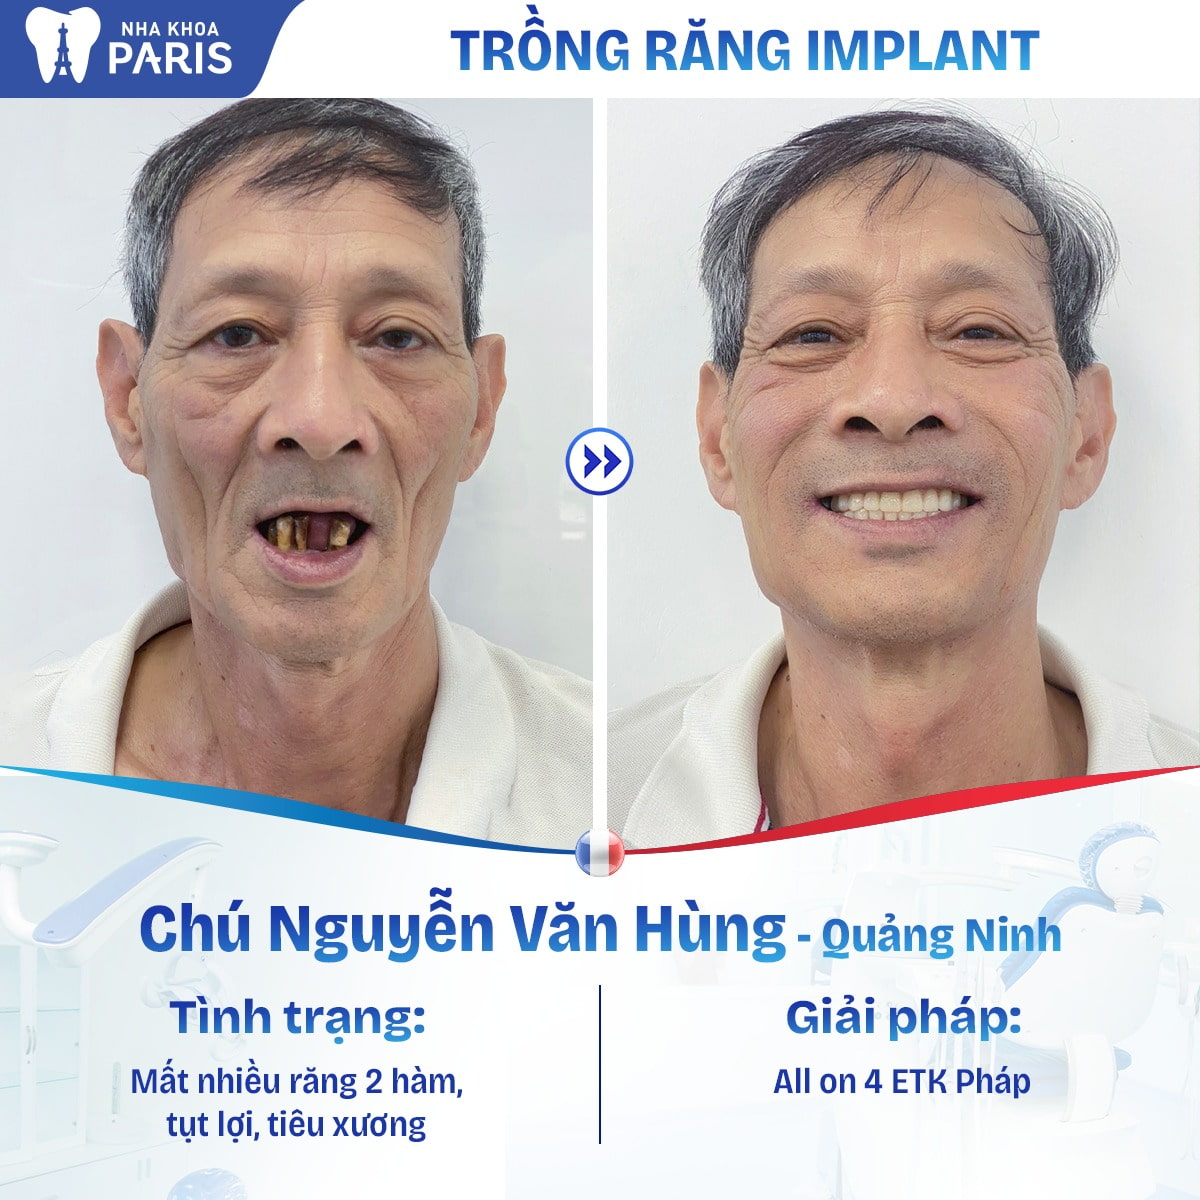 Cấy ghép Implant là phương pháp phục hình răng mất nhiều thời gian nhất